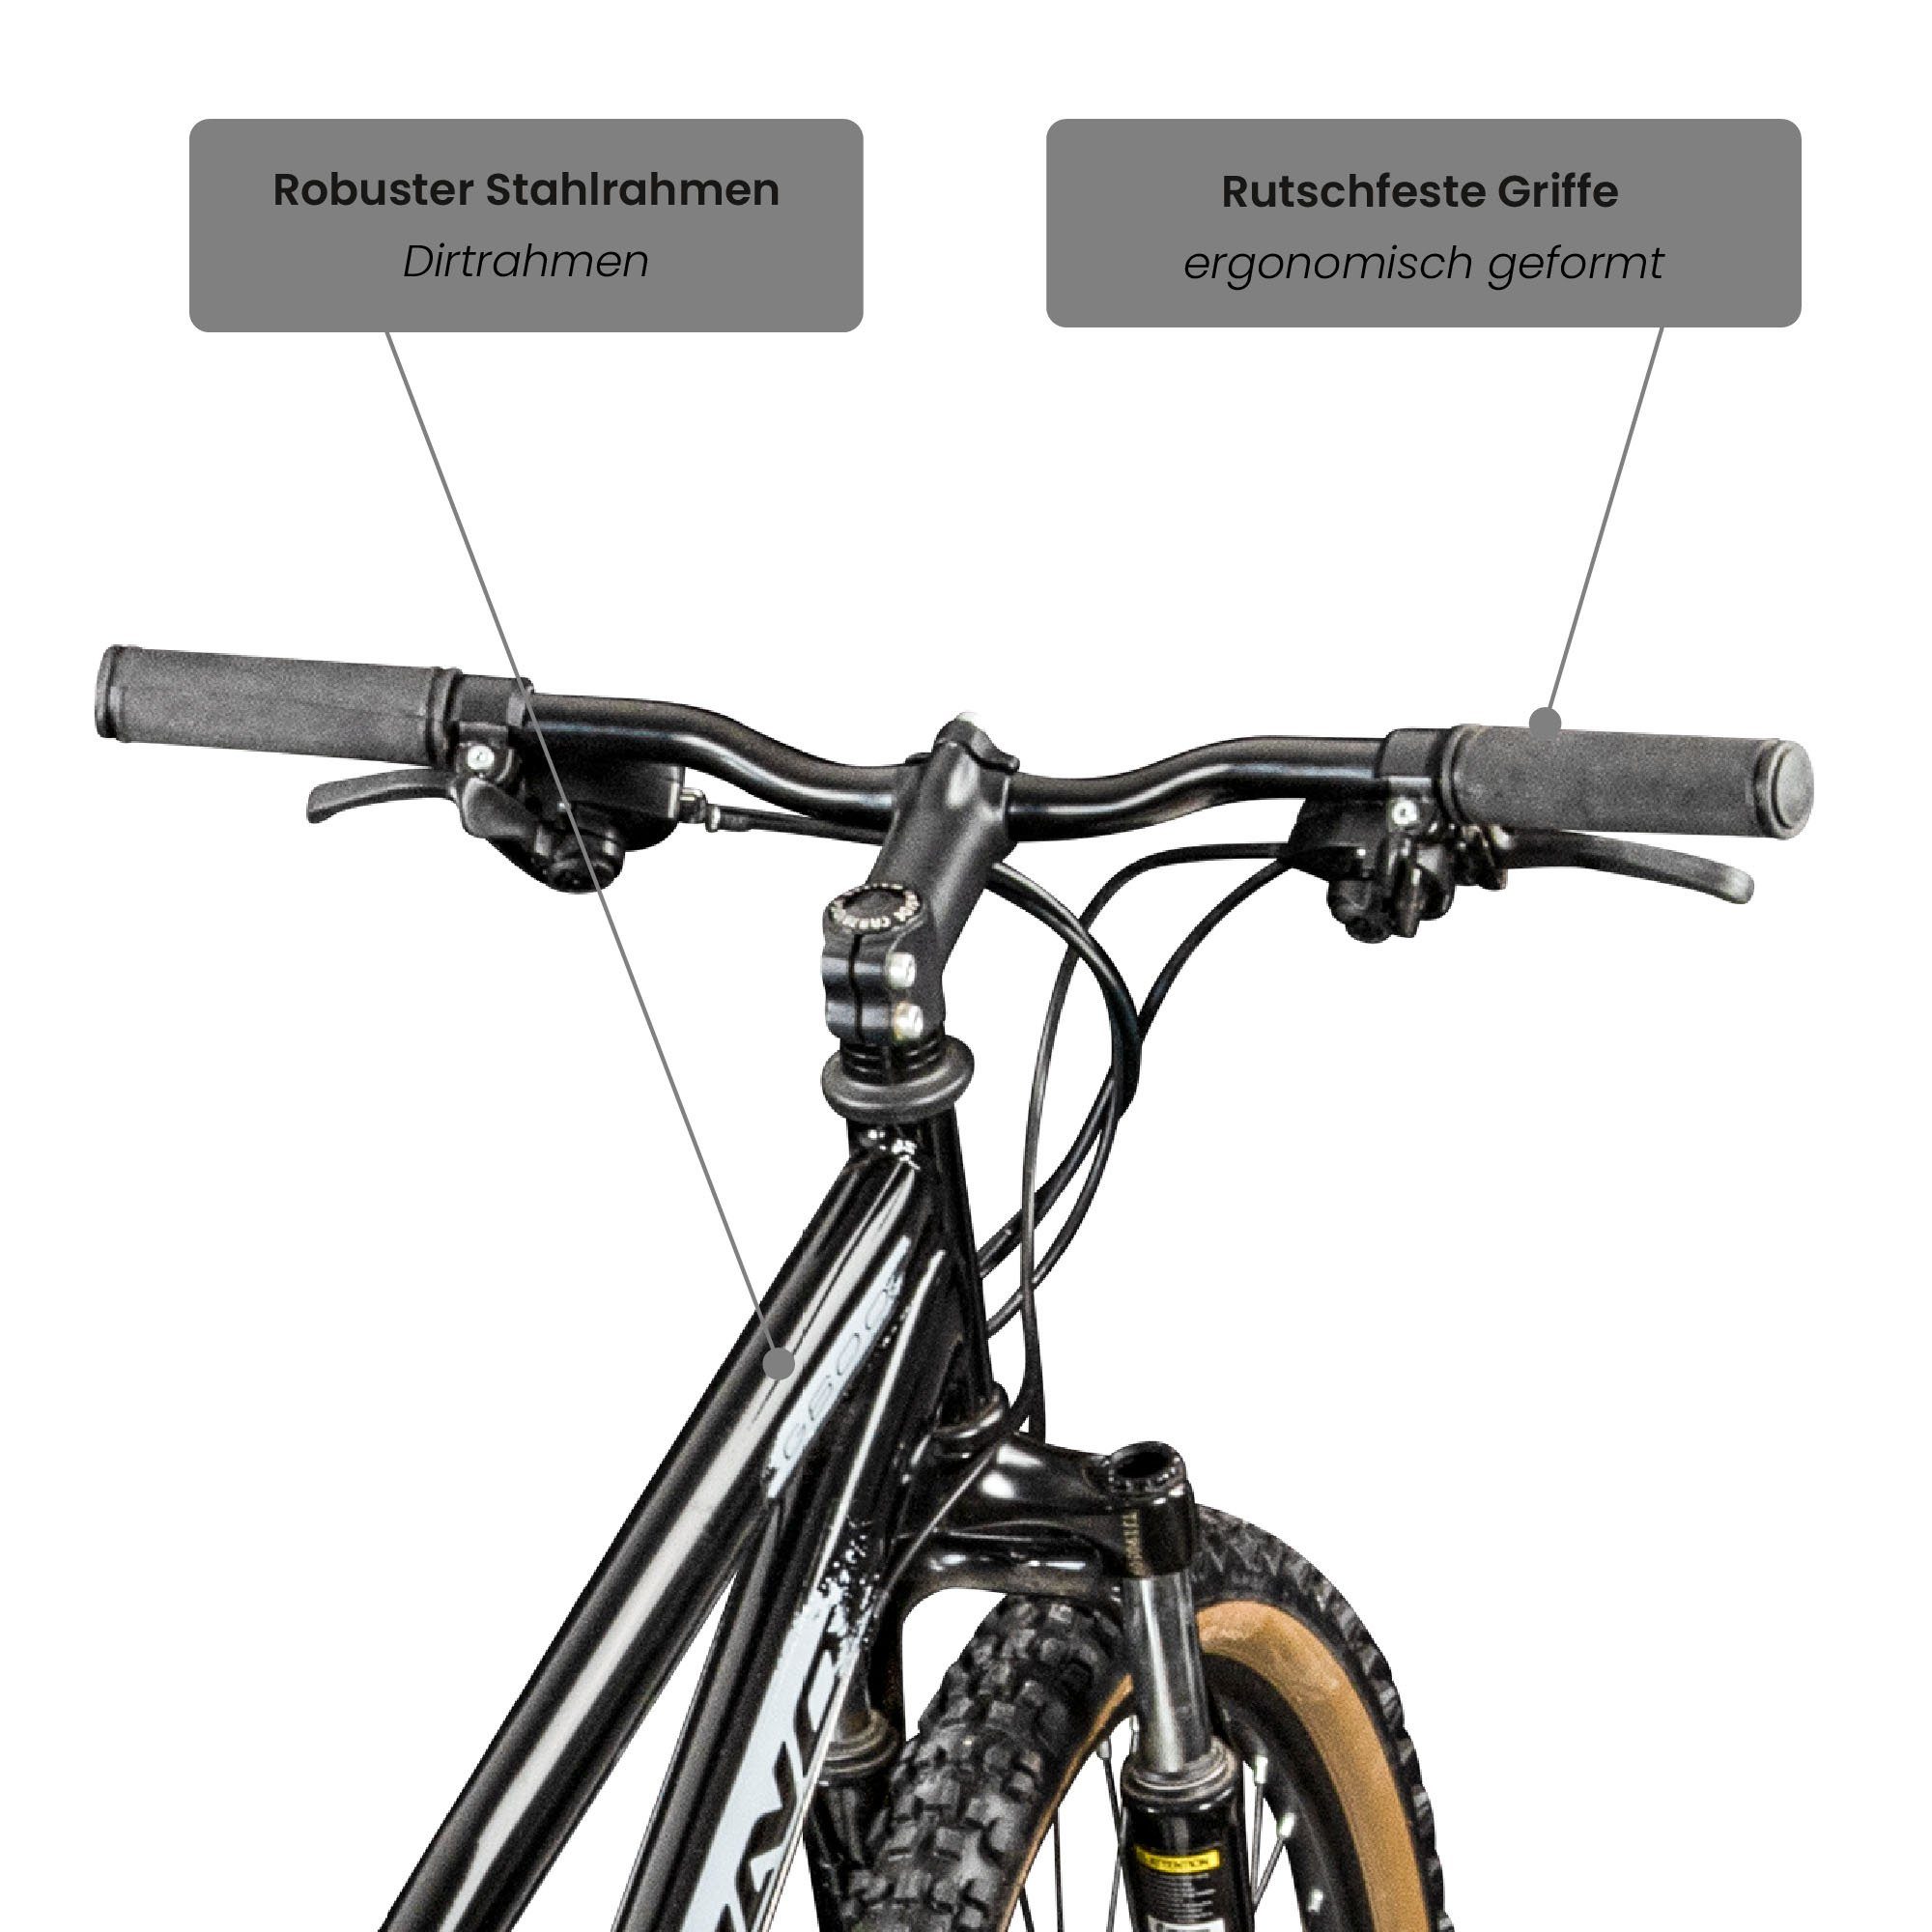 Dirtbike Galano schwarz/silbergrau G600, Fahrrad Kettenschaltung, - 26 Mountainbike für Erwachsene Jugendliche Zoll 145 und 165 Gang, 18 cm